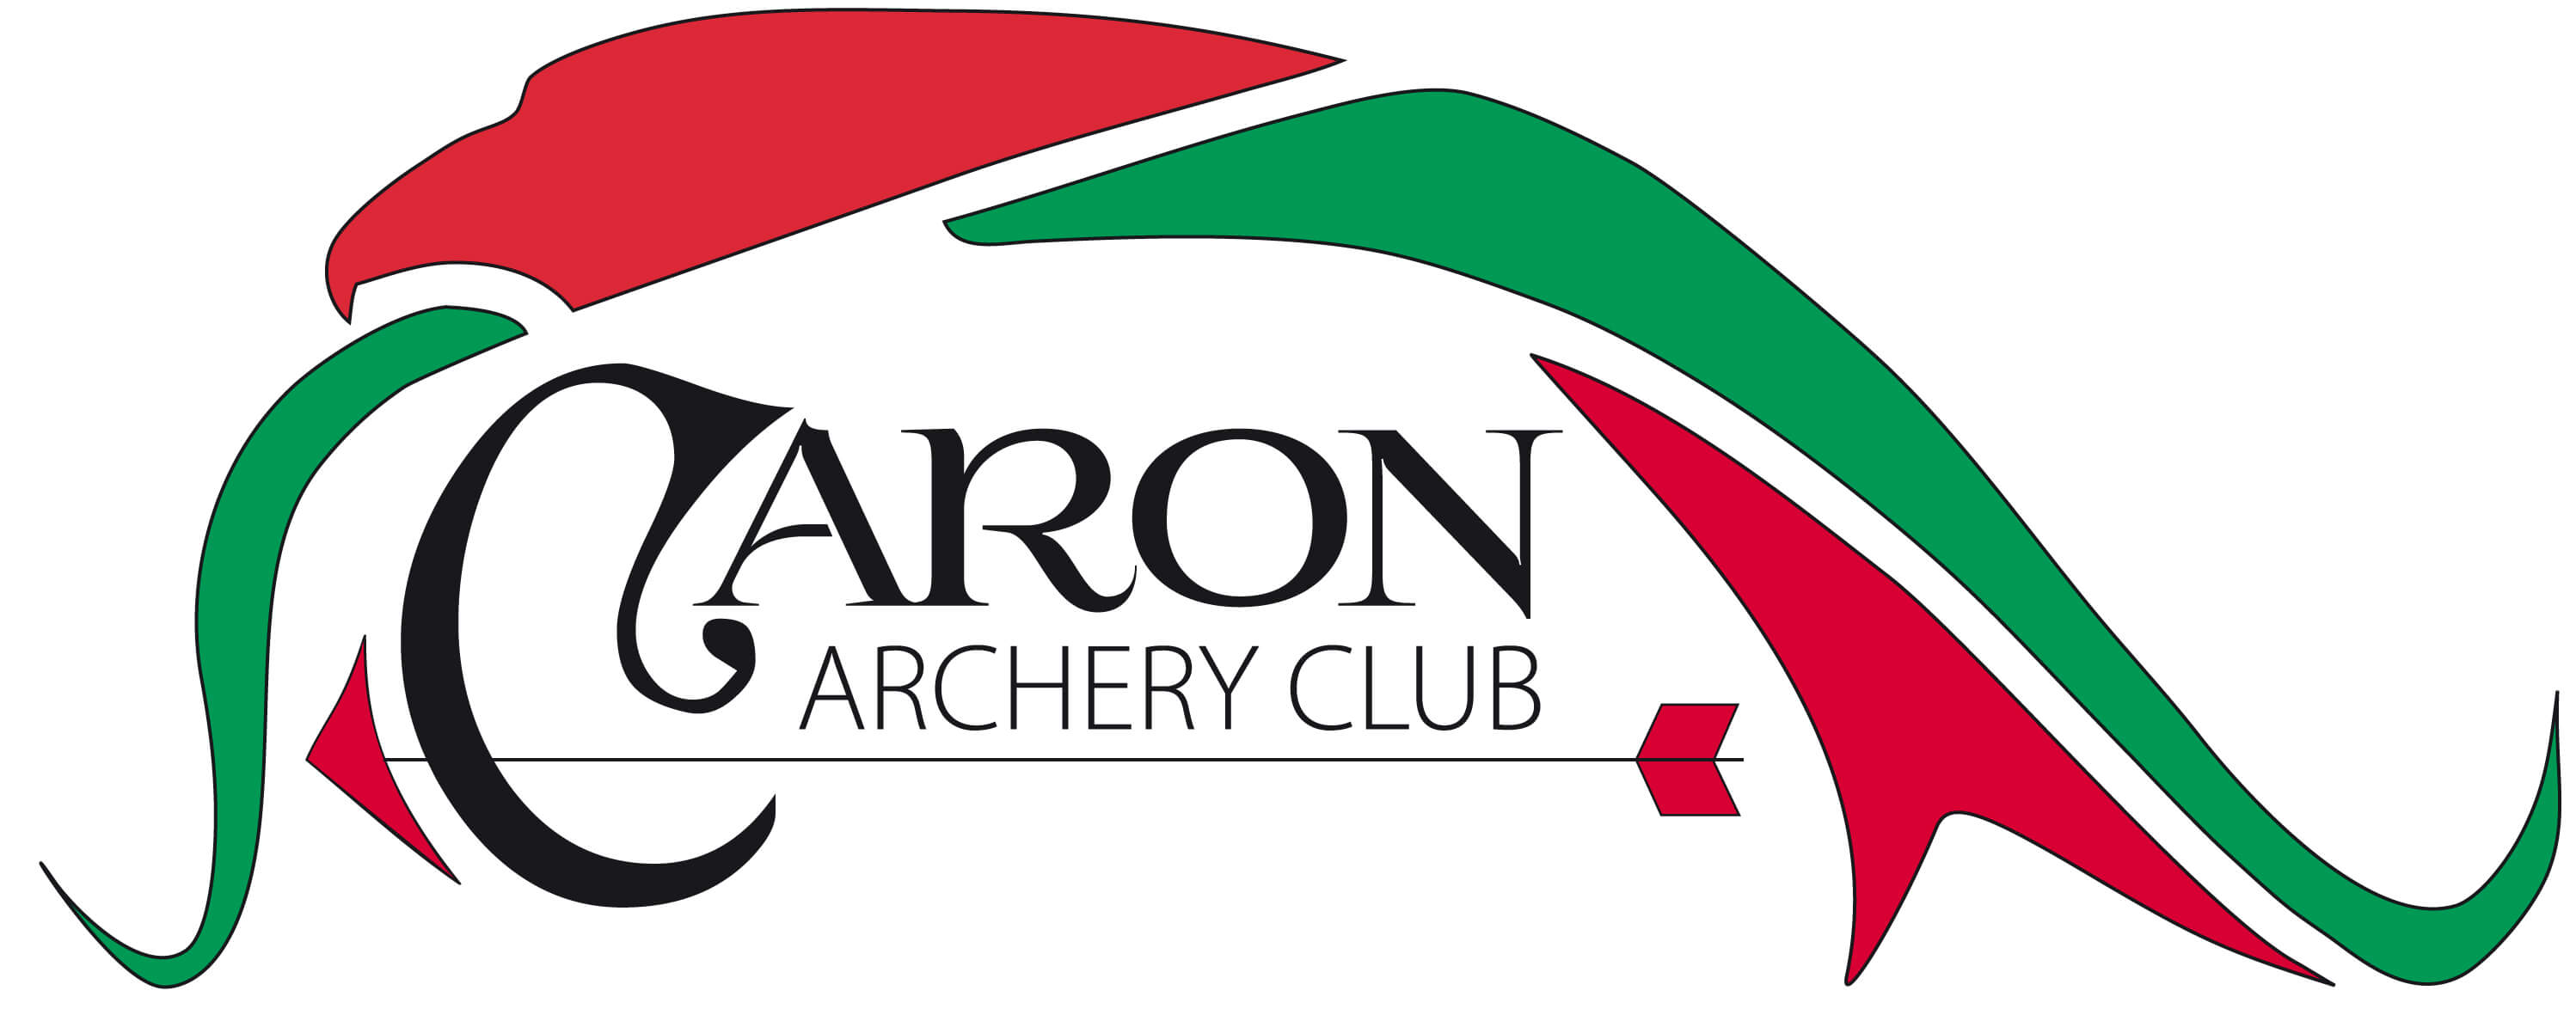 Caron archery club logo